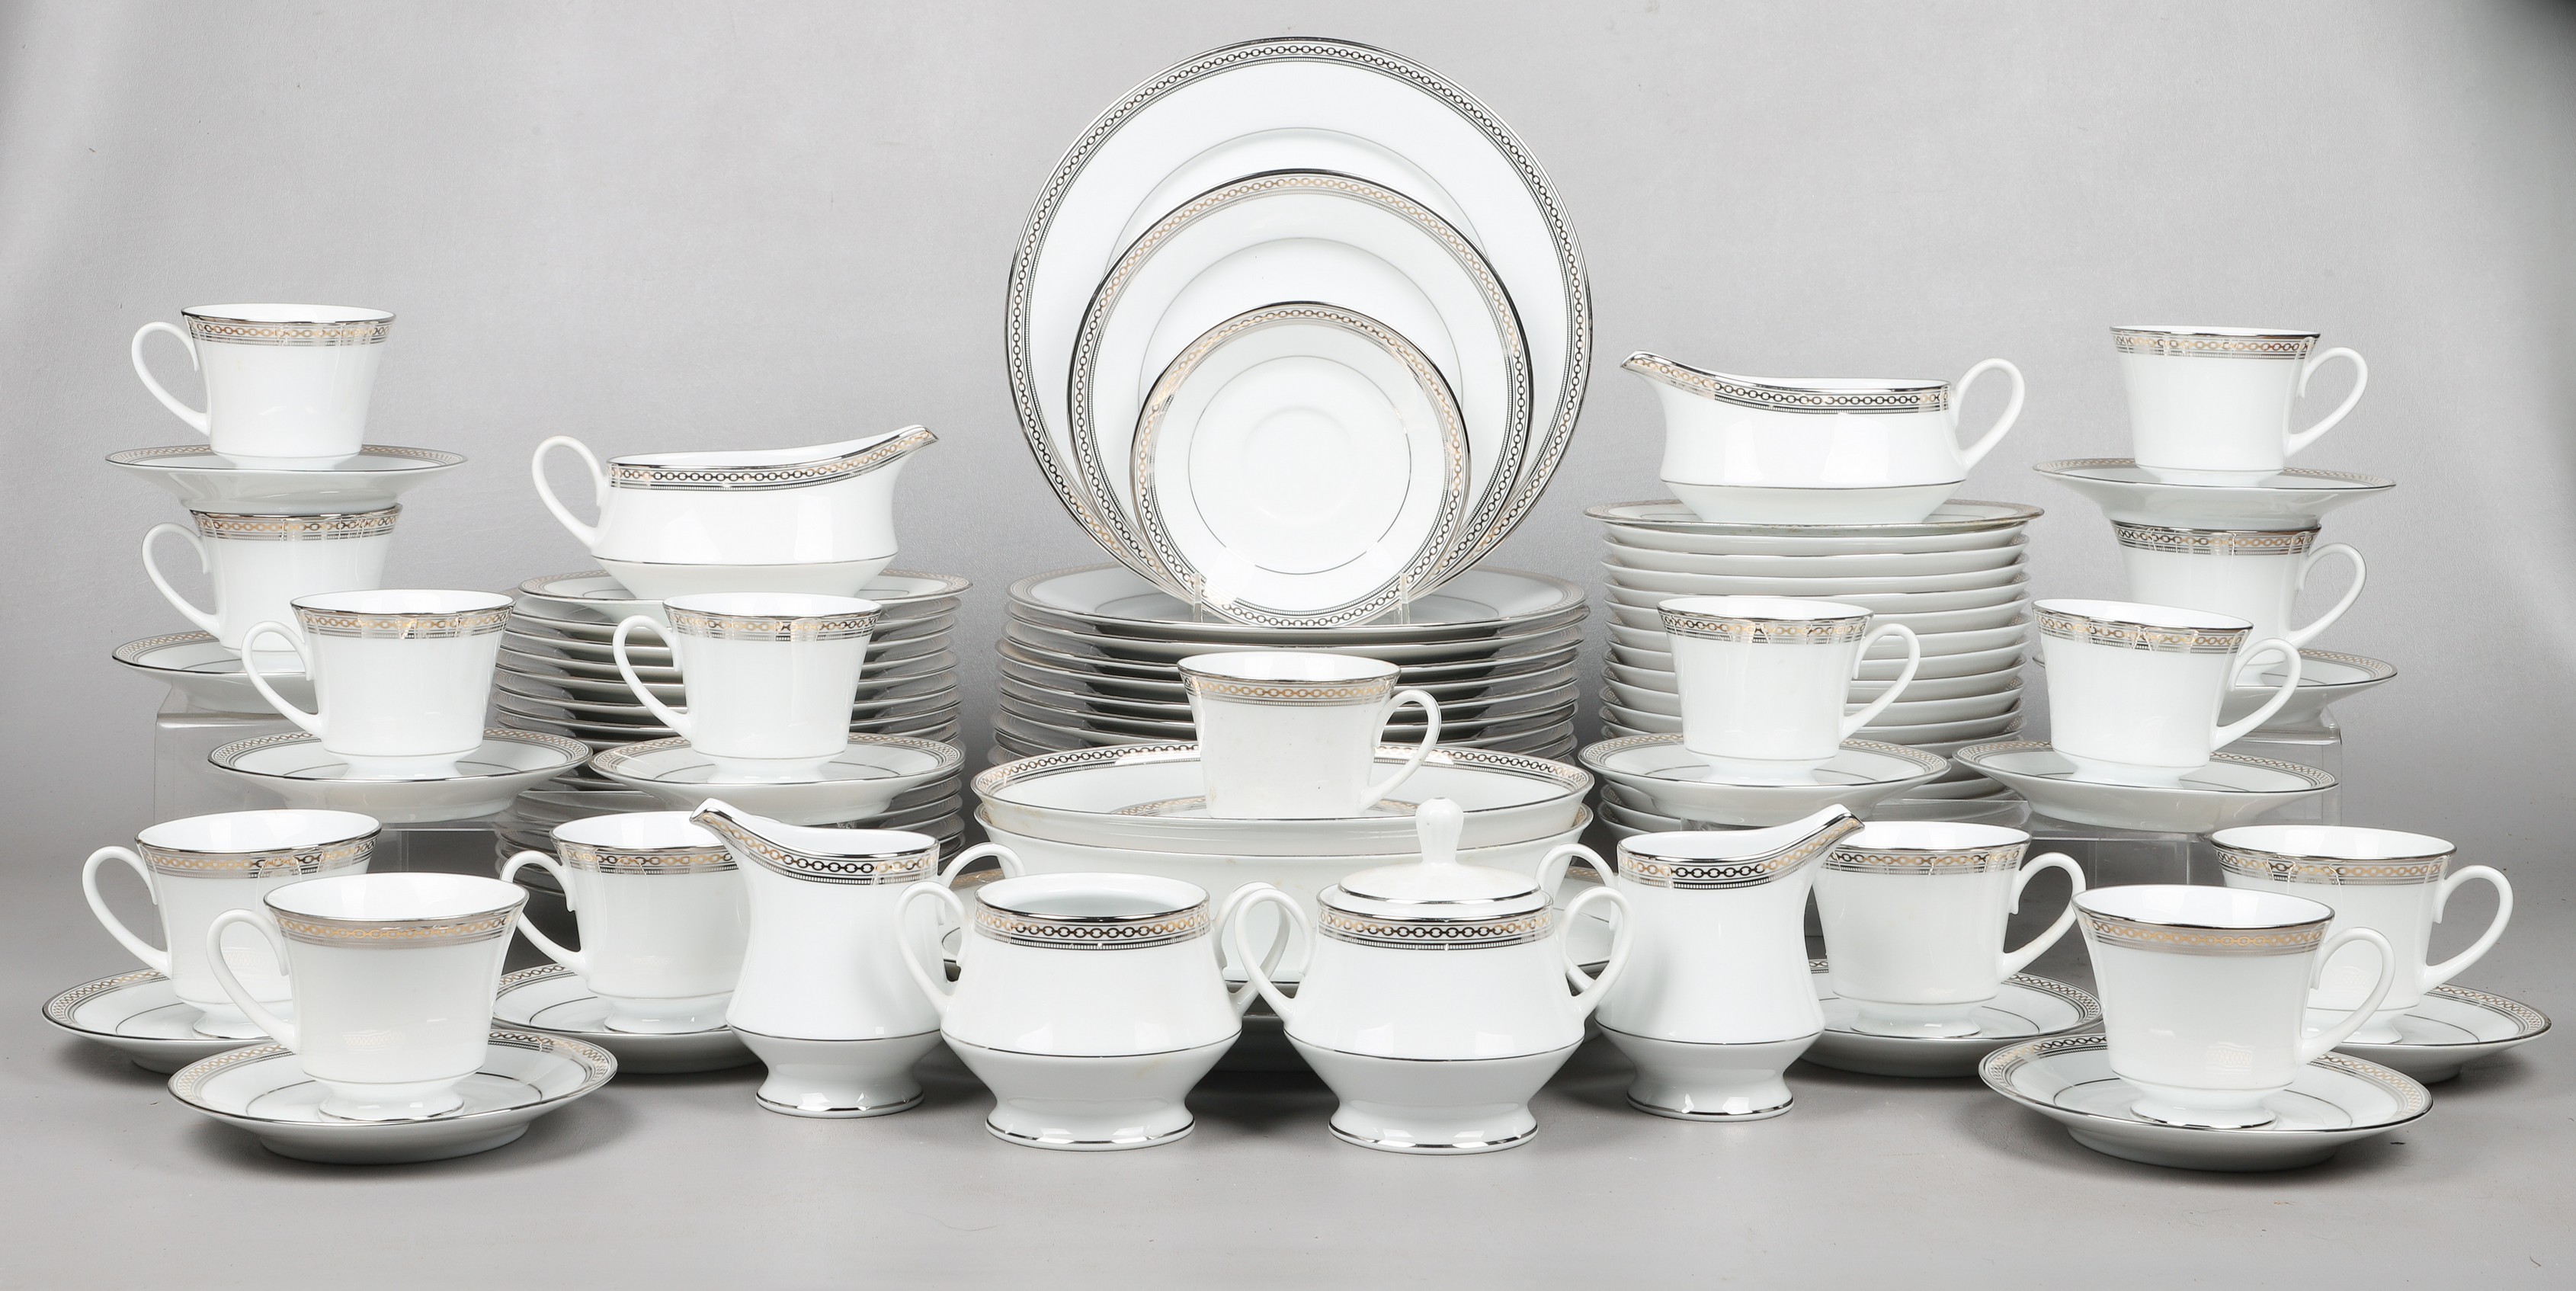  87 Pcs Noritake porcelain dinnerware  2e05f1